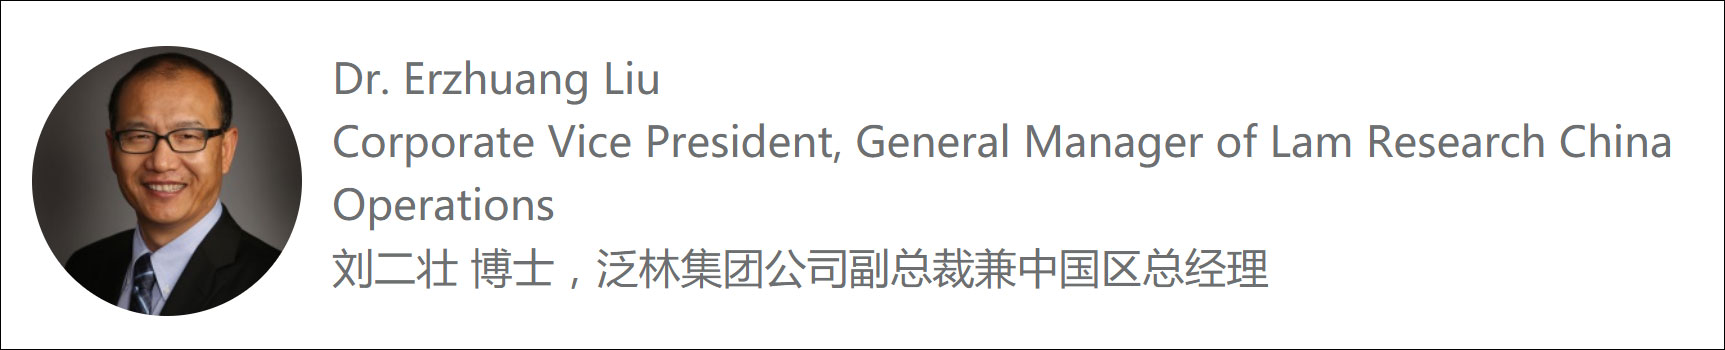 原泛林集团副总裁刘二壮加盟紫光集团